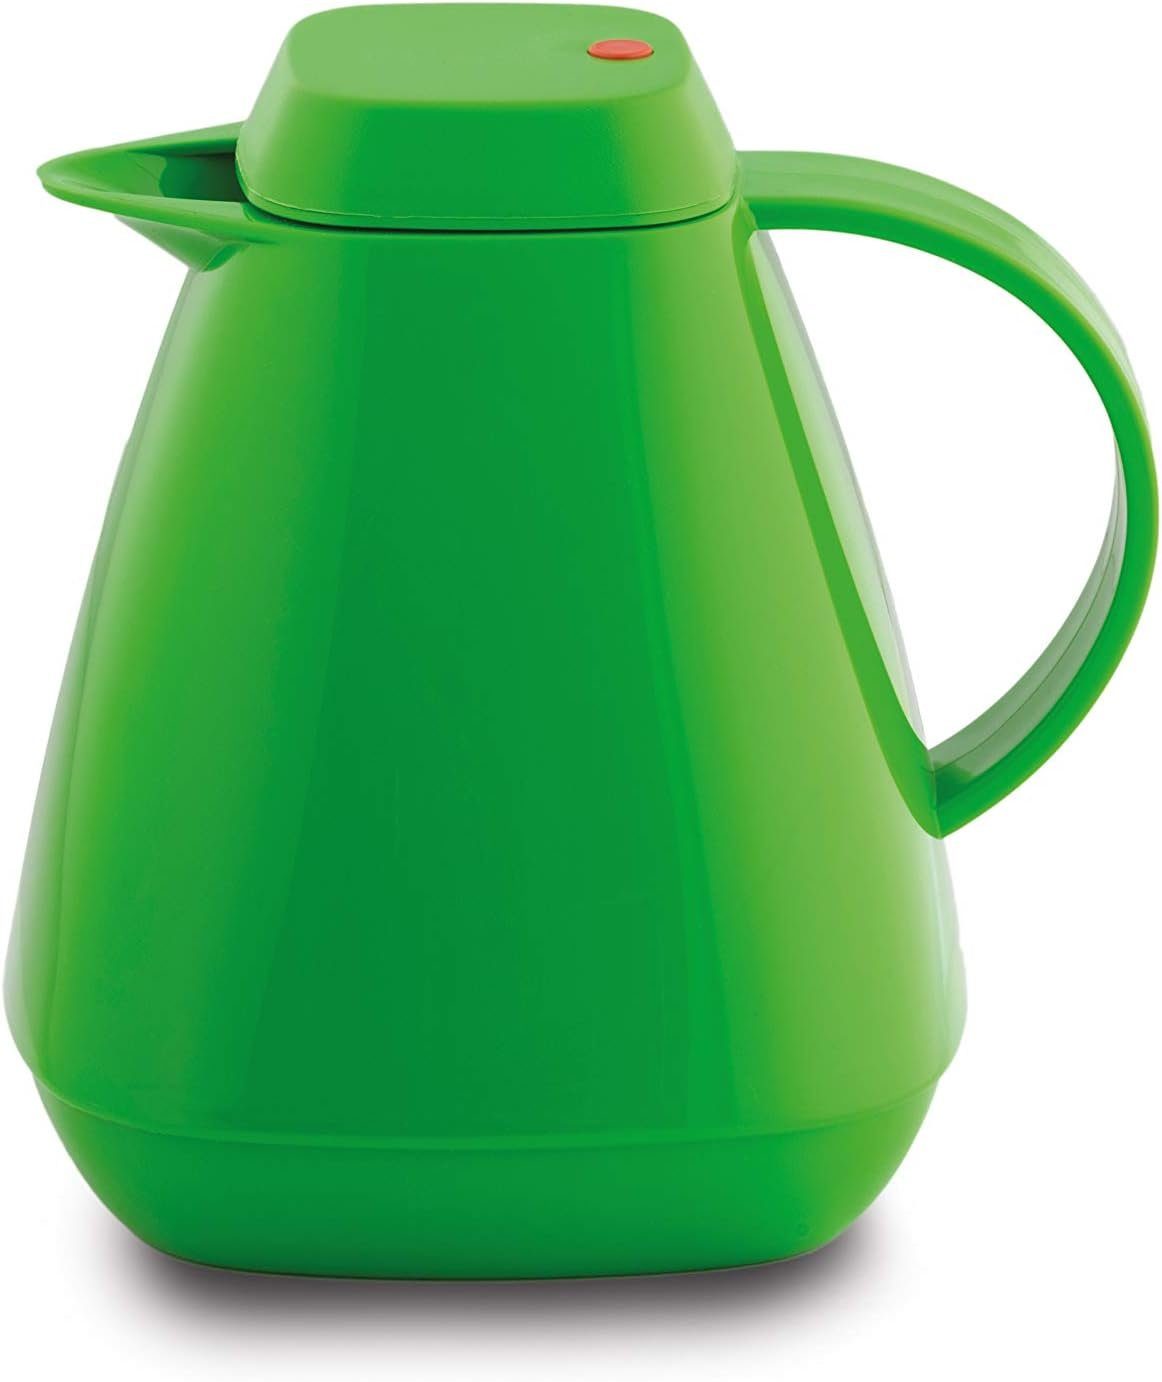 ROTPUNKT Isolierkanne 1,0 Liter 650 Glaseinsatz I hochwertig I langlebig I 24 Std wamm, (Kaffeekanne I Teekanne), robust und auslaufsicher flip green